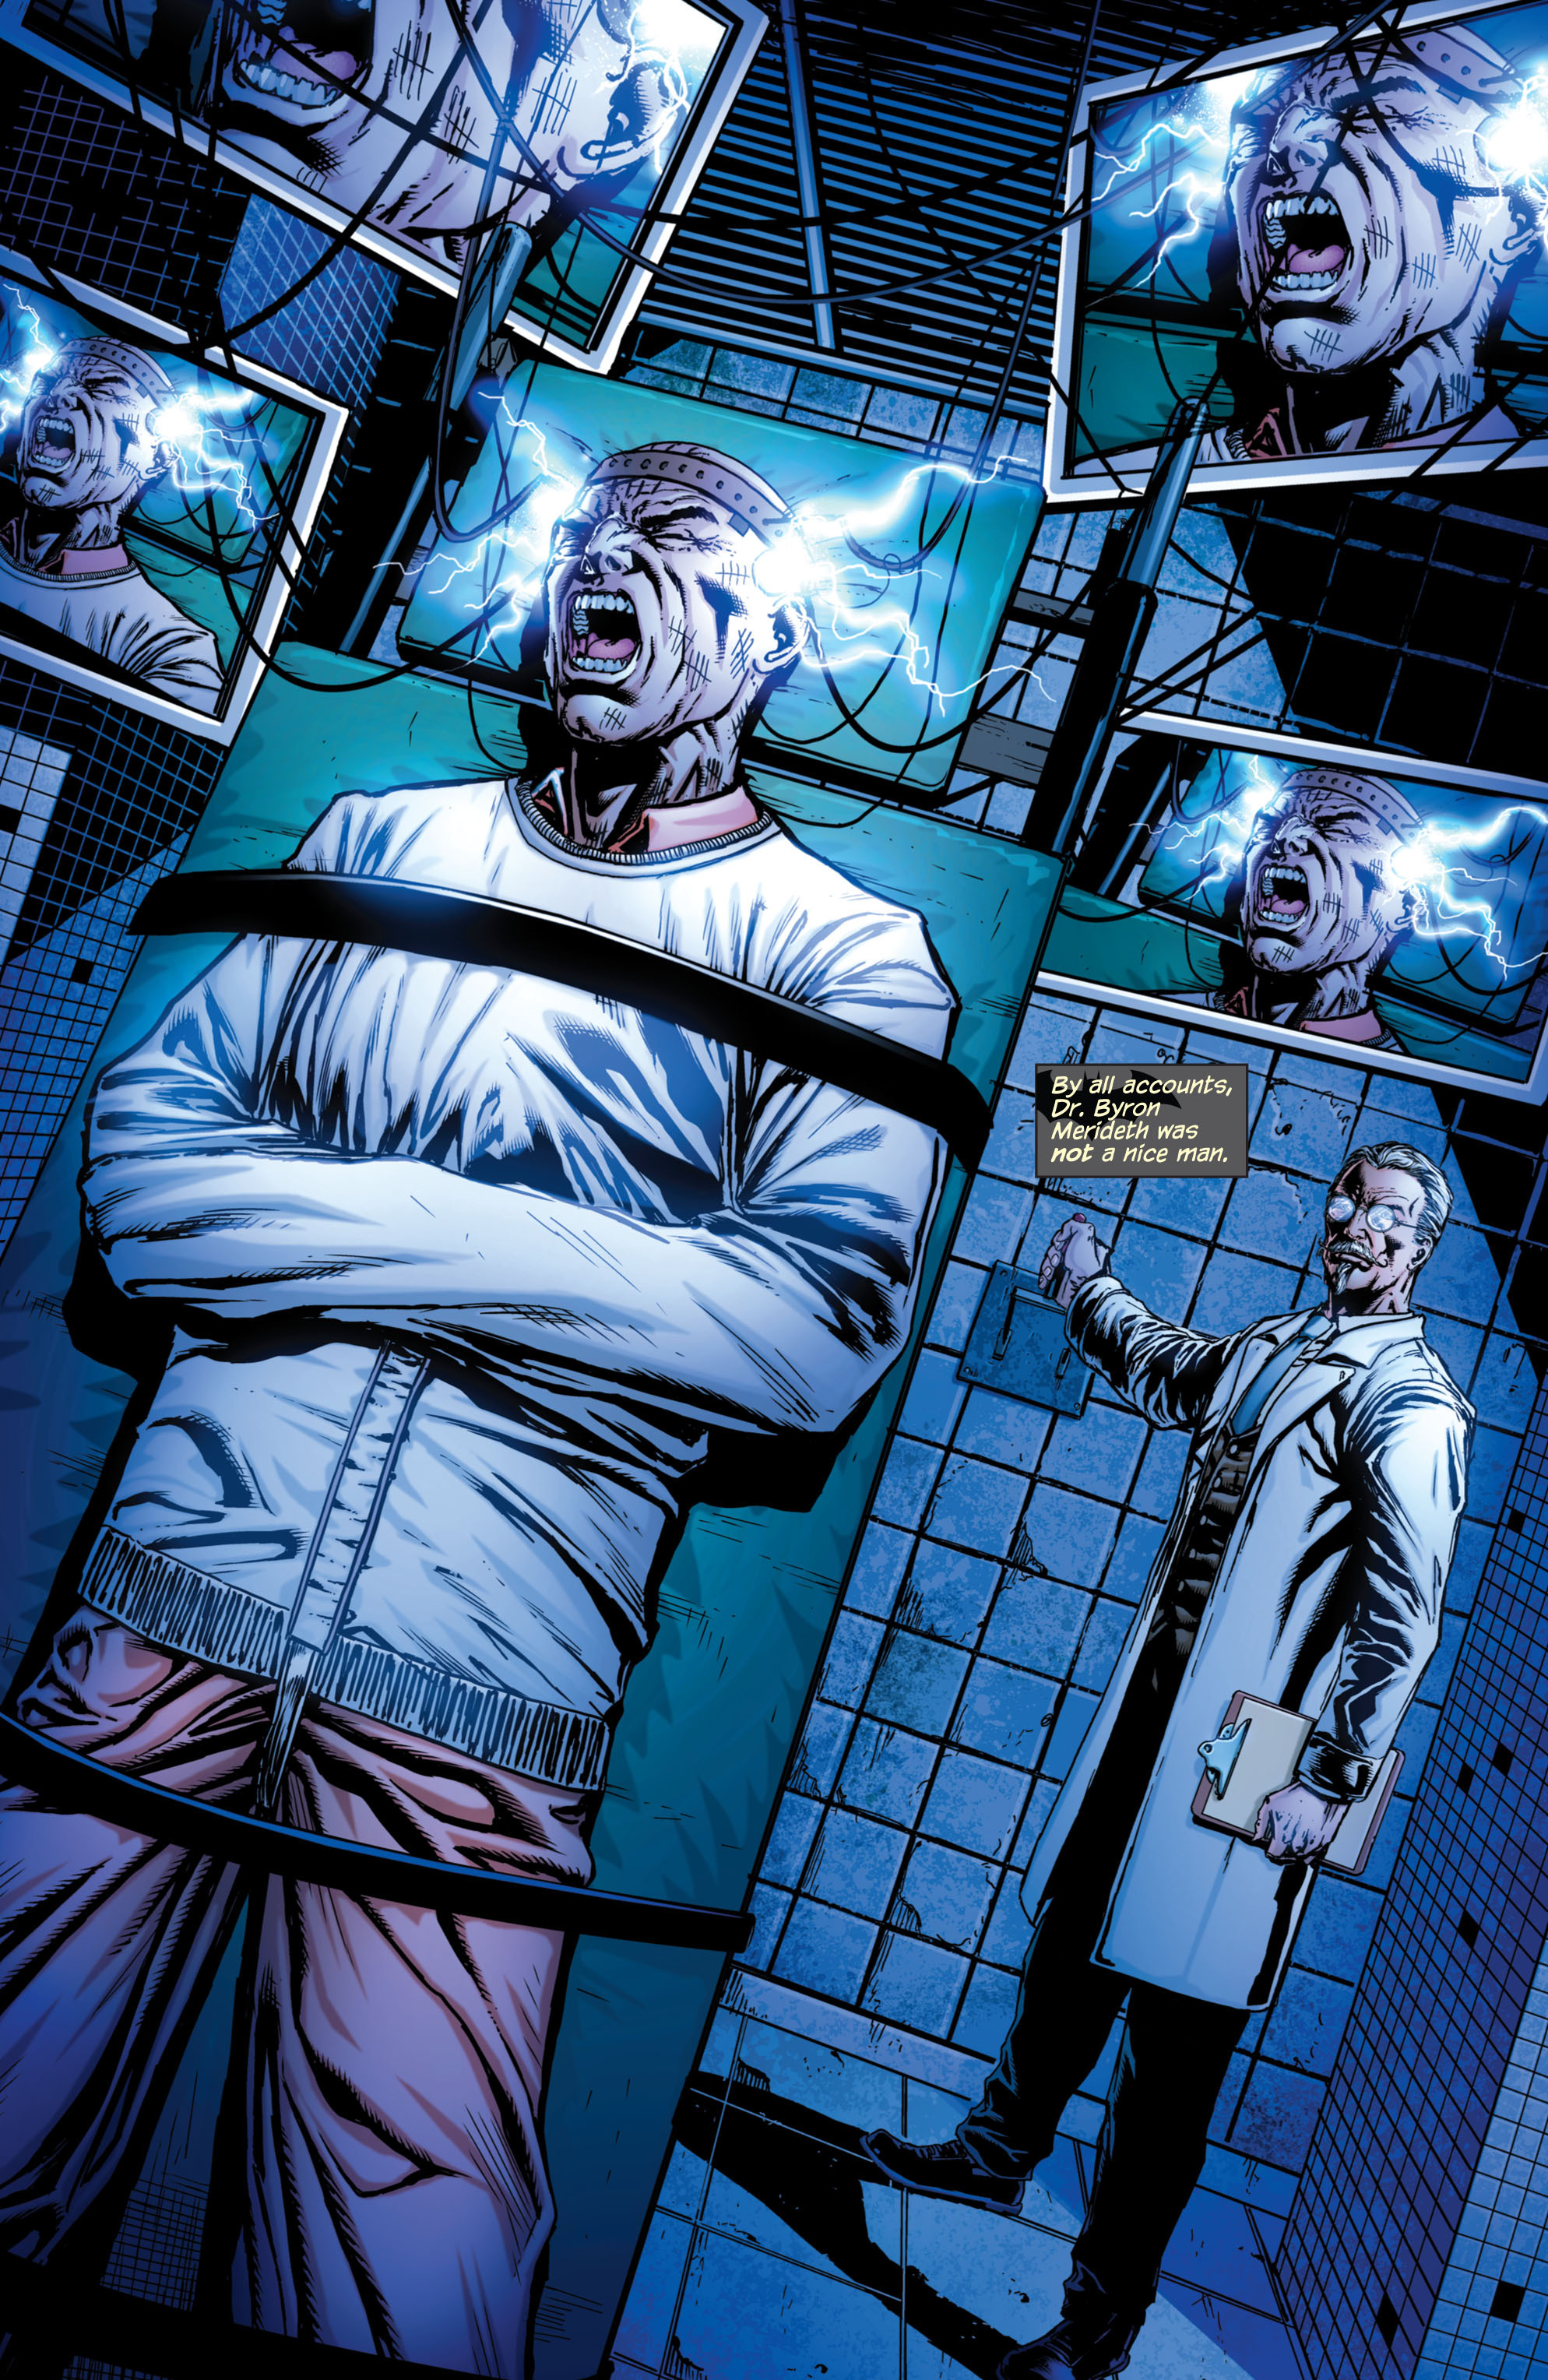 Read online Batman: Detective Comics comic -  Issue # TPB 3 - 123